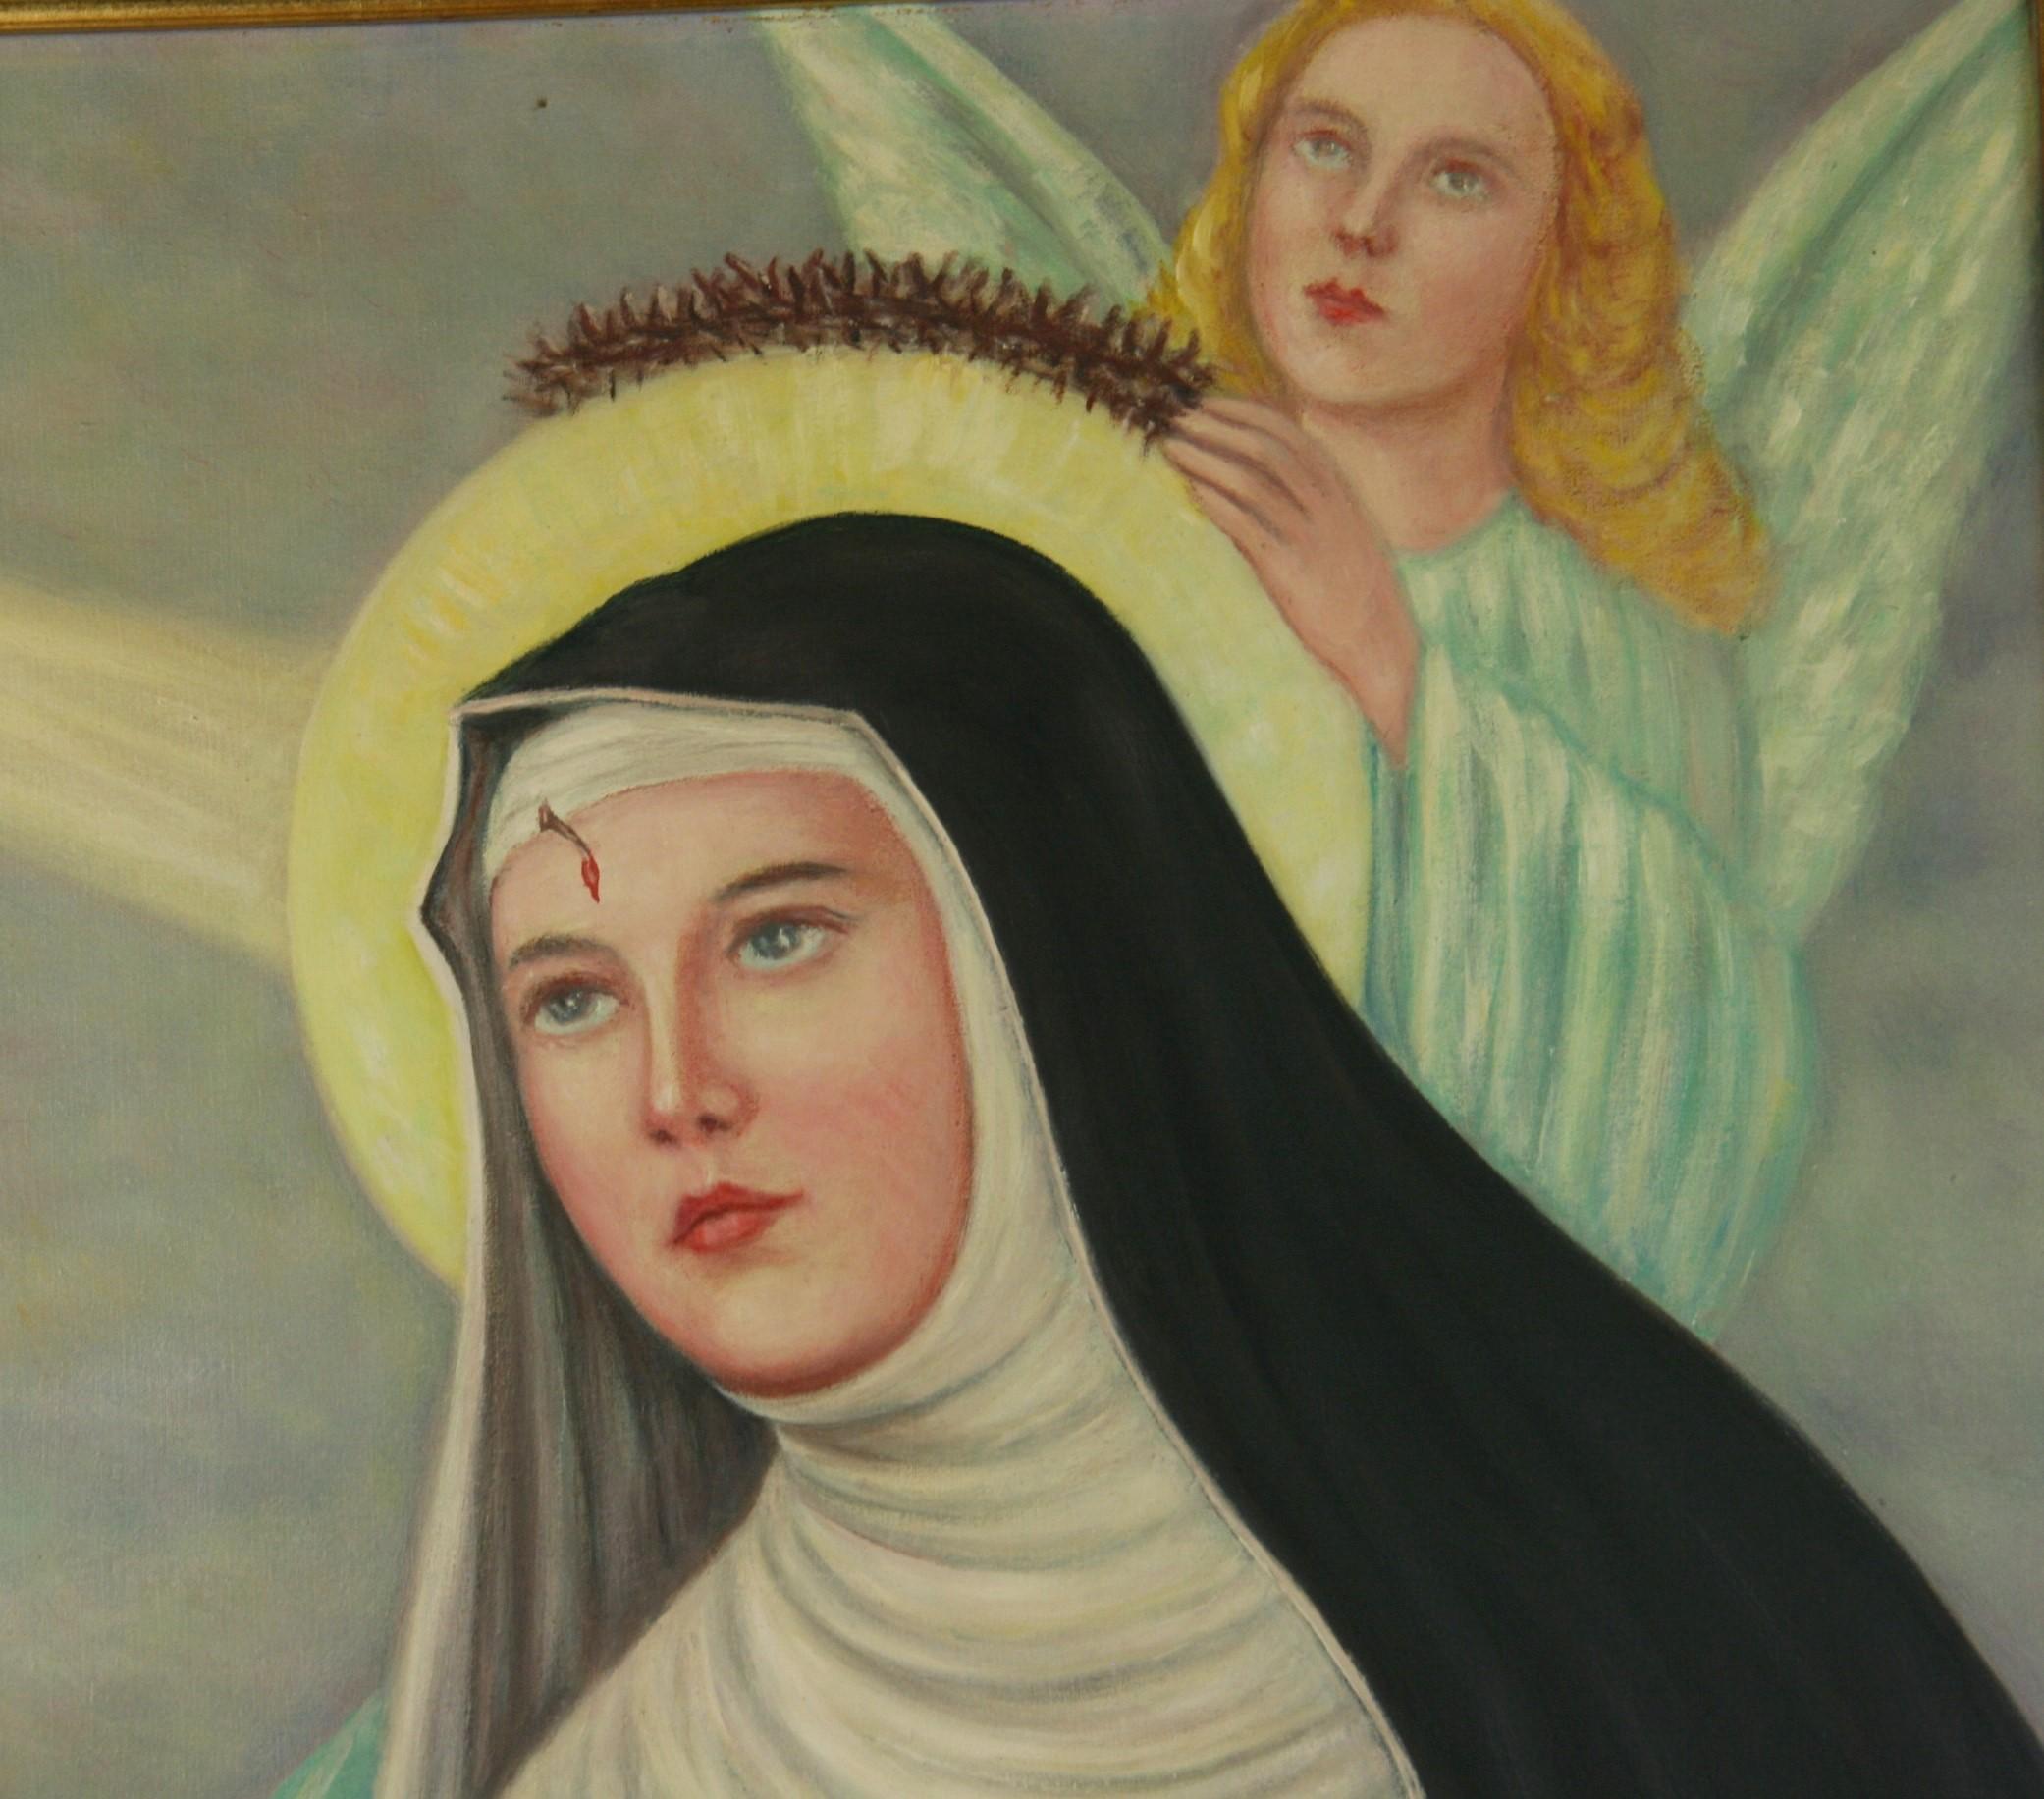 3805 Italian Religious oil painting of saint Rita the first woman stigmata
Image size 21x23
